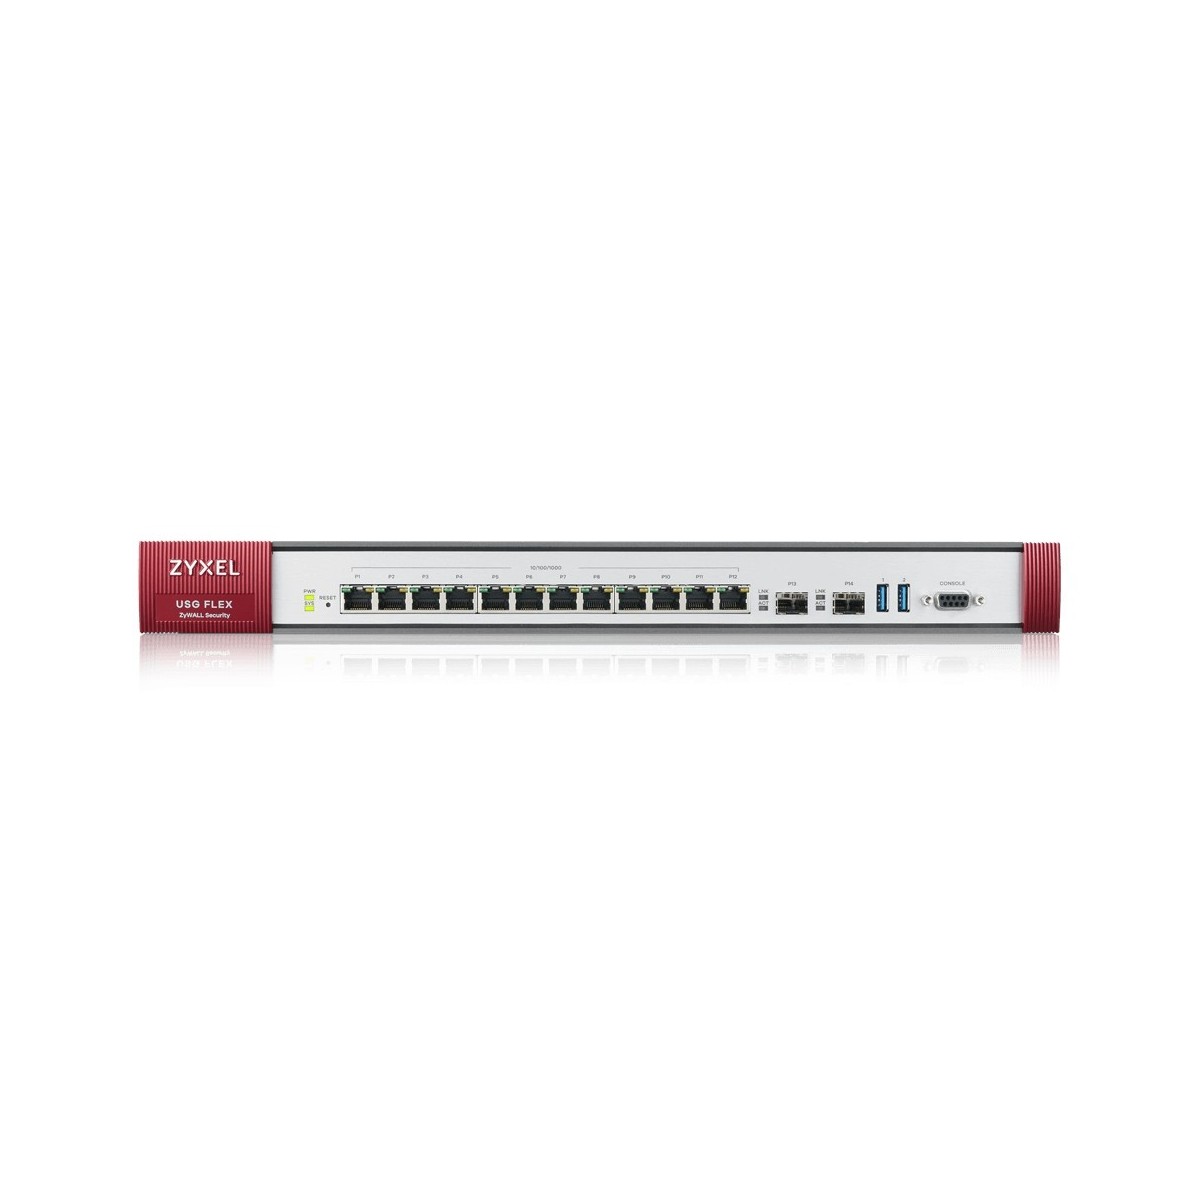 ZyXEL USG FLEX 700 - 5400 Mbit/s - 1100 Mbit/s - 550 Mbit/s - 120.1 BTU/h - FCC 15 (A) - CE EMC (A) - C-Tick (A) - BSMI - 150 us